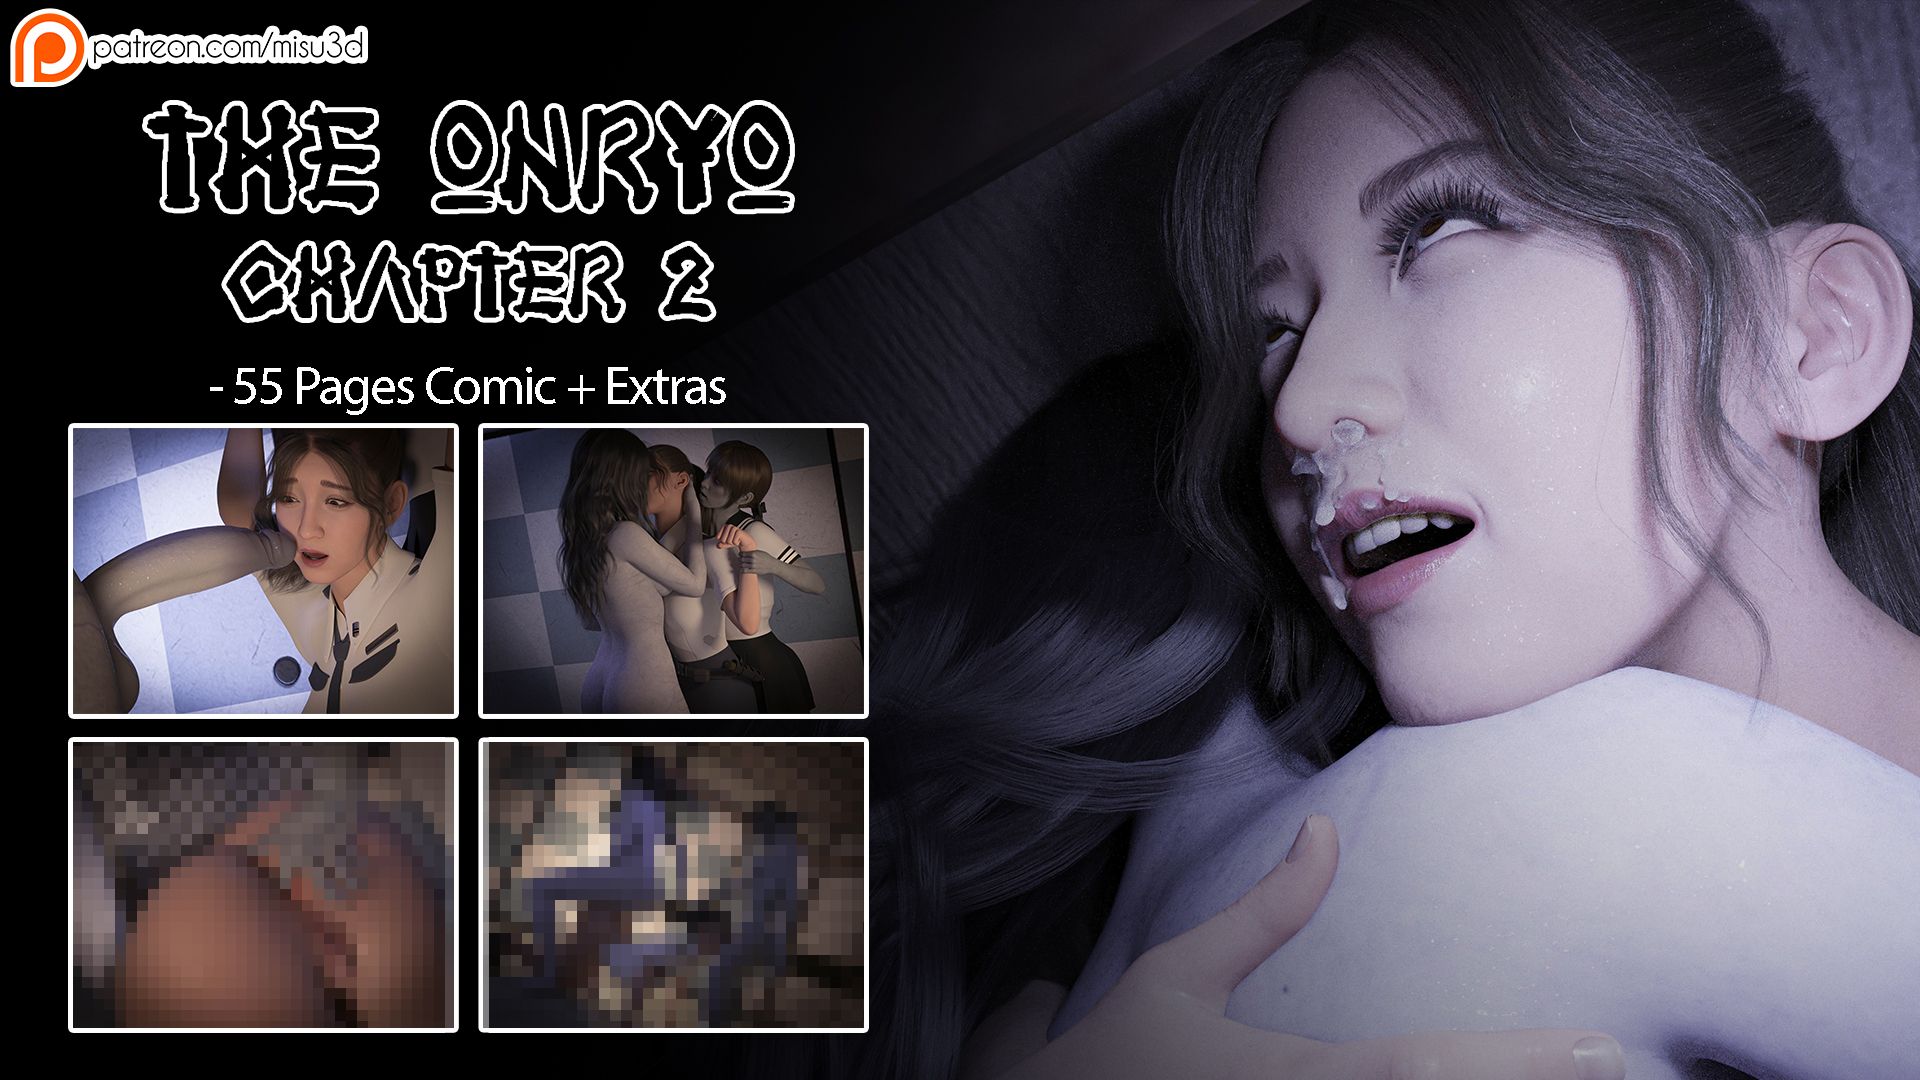 The Onryo Chapter 2 - Porn Comics